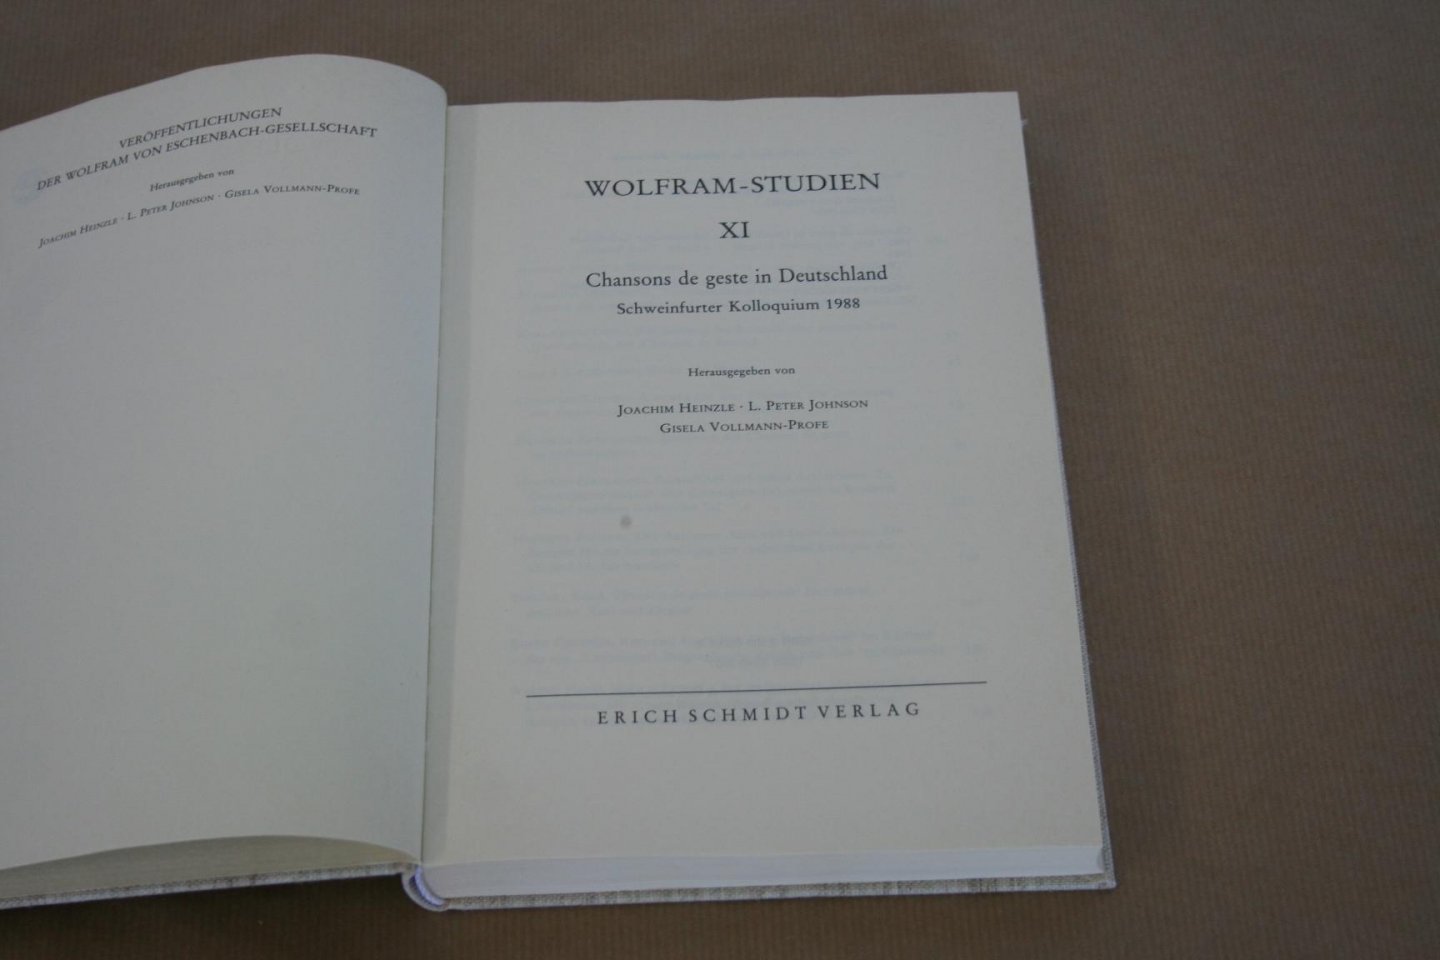 Heinzle, Johnson & Vollmann-Profe - Wolfram-Studien XI - Chansons de geste in Deutschland Schweinfurter Kolloquium 1988